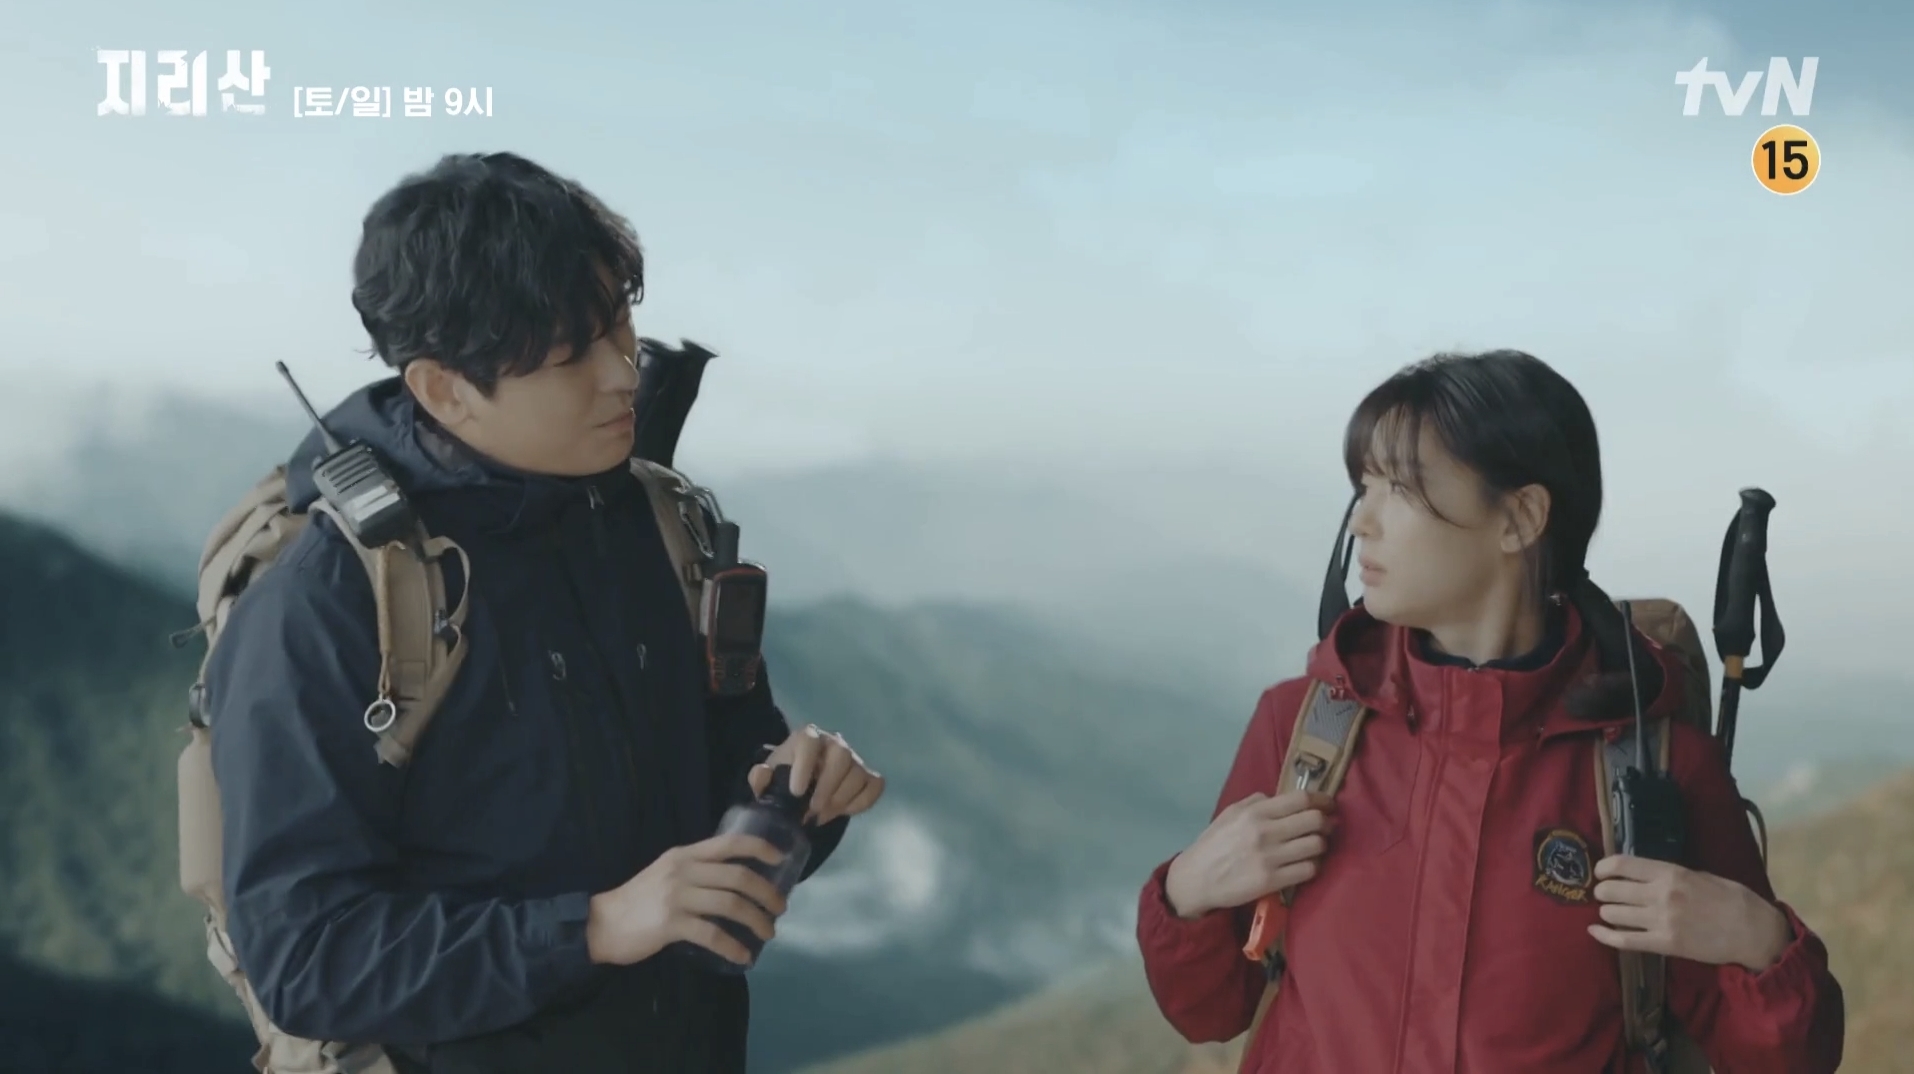 “CG가 어색하다”는 논란이 불거진 드라마 ‘지리산’ 방송 화면. tvN 방송화면 캡처